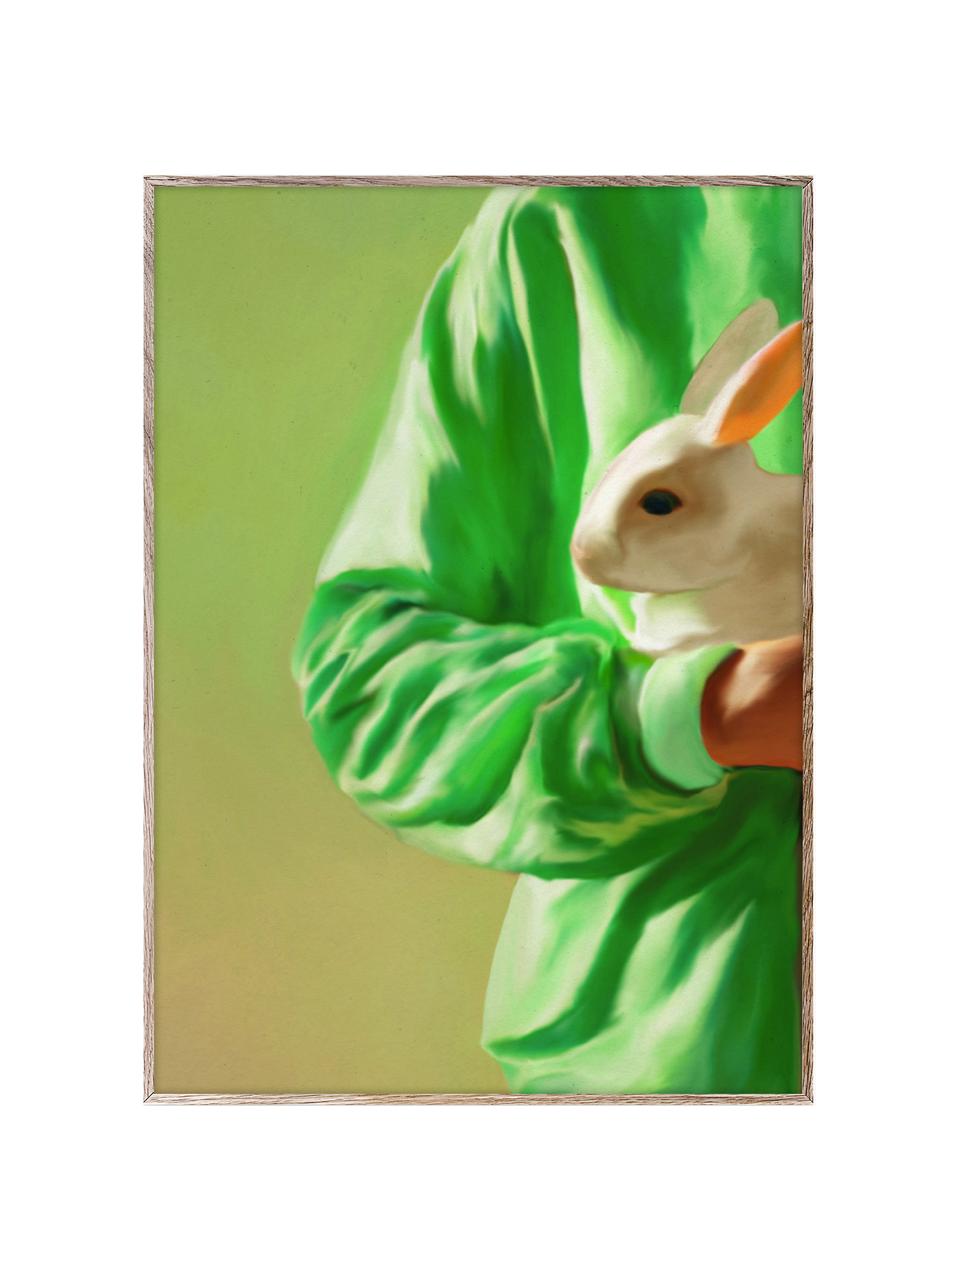 Plakát White Rabbit, 210g matný papír Hahnemühle, digitální tisk s 10 barvami odolnými vůči UV záření, Odstíny zelené, Š 30 cm, V 40 cm